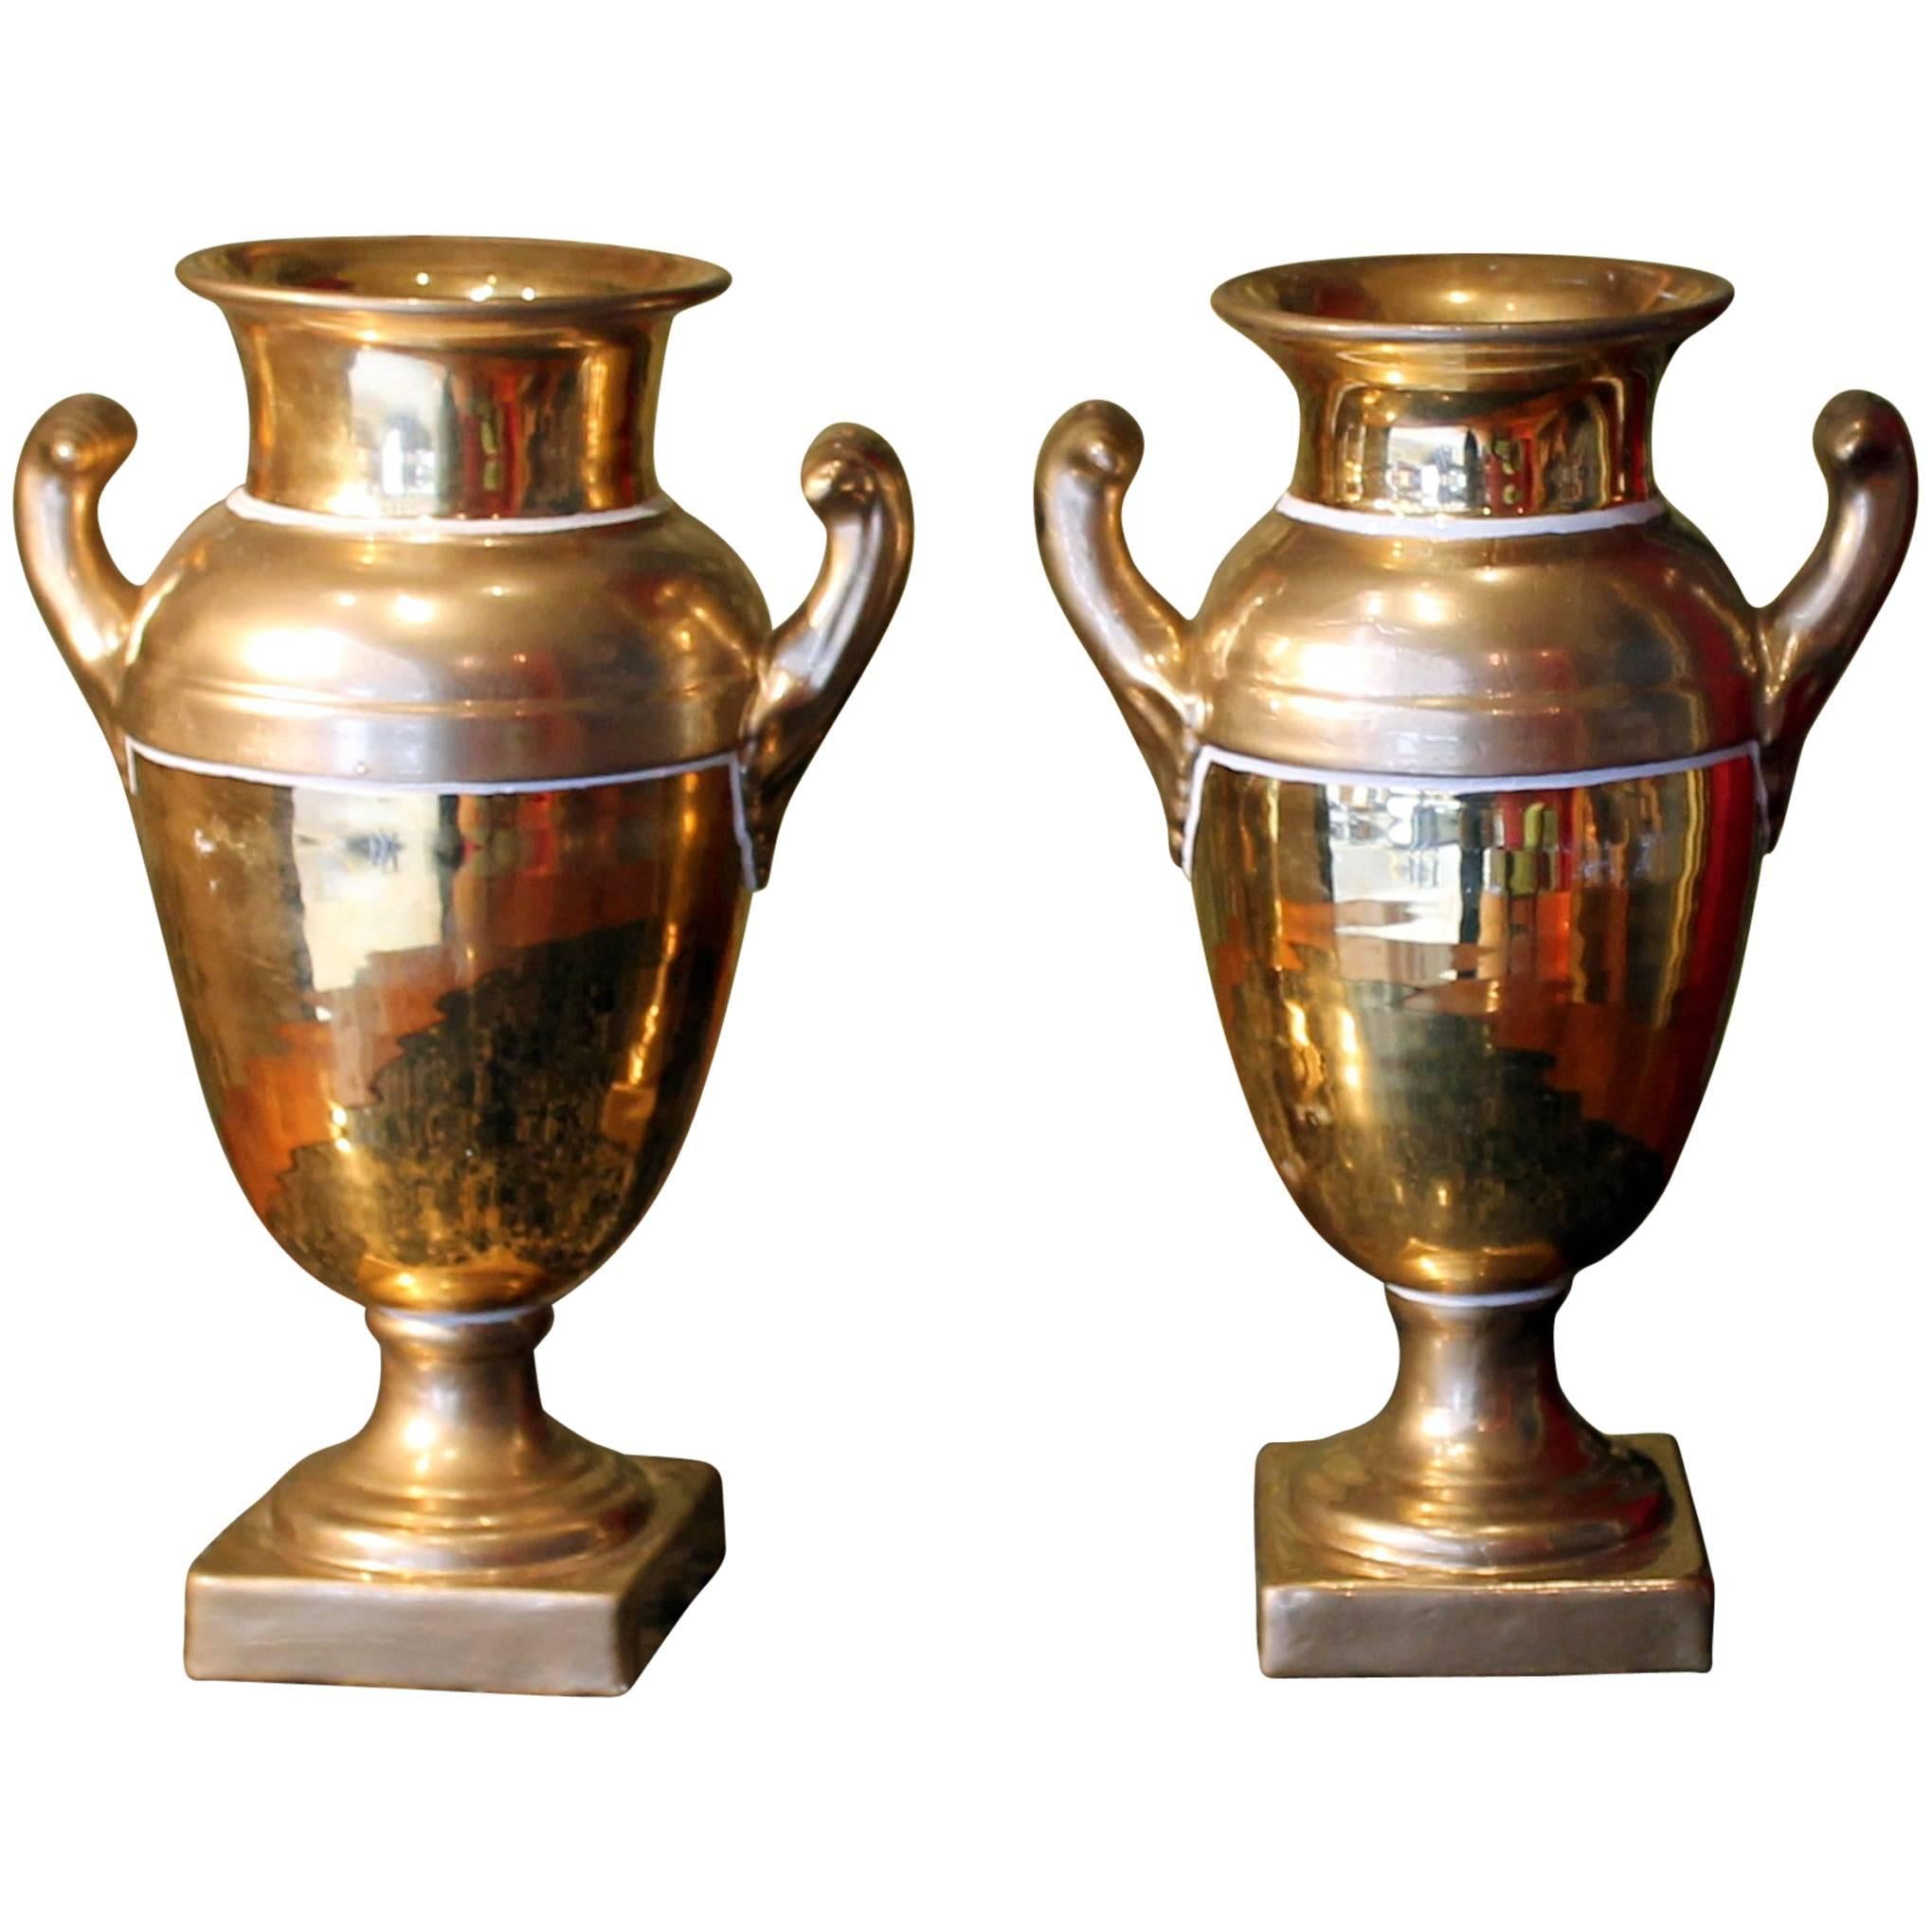 Paire de vases en porcelaine dorée matte et brunie de la période Empire français